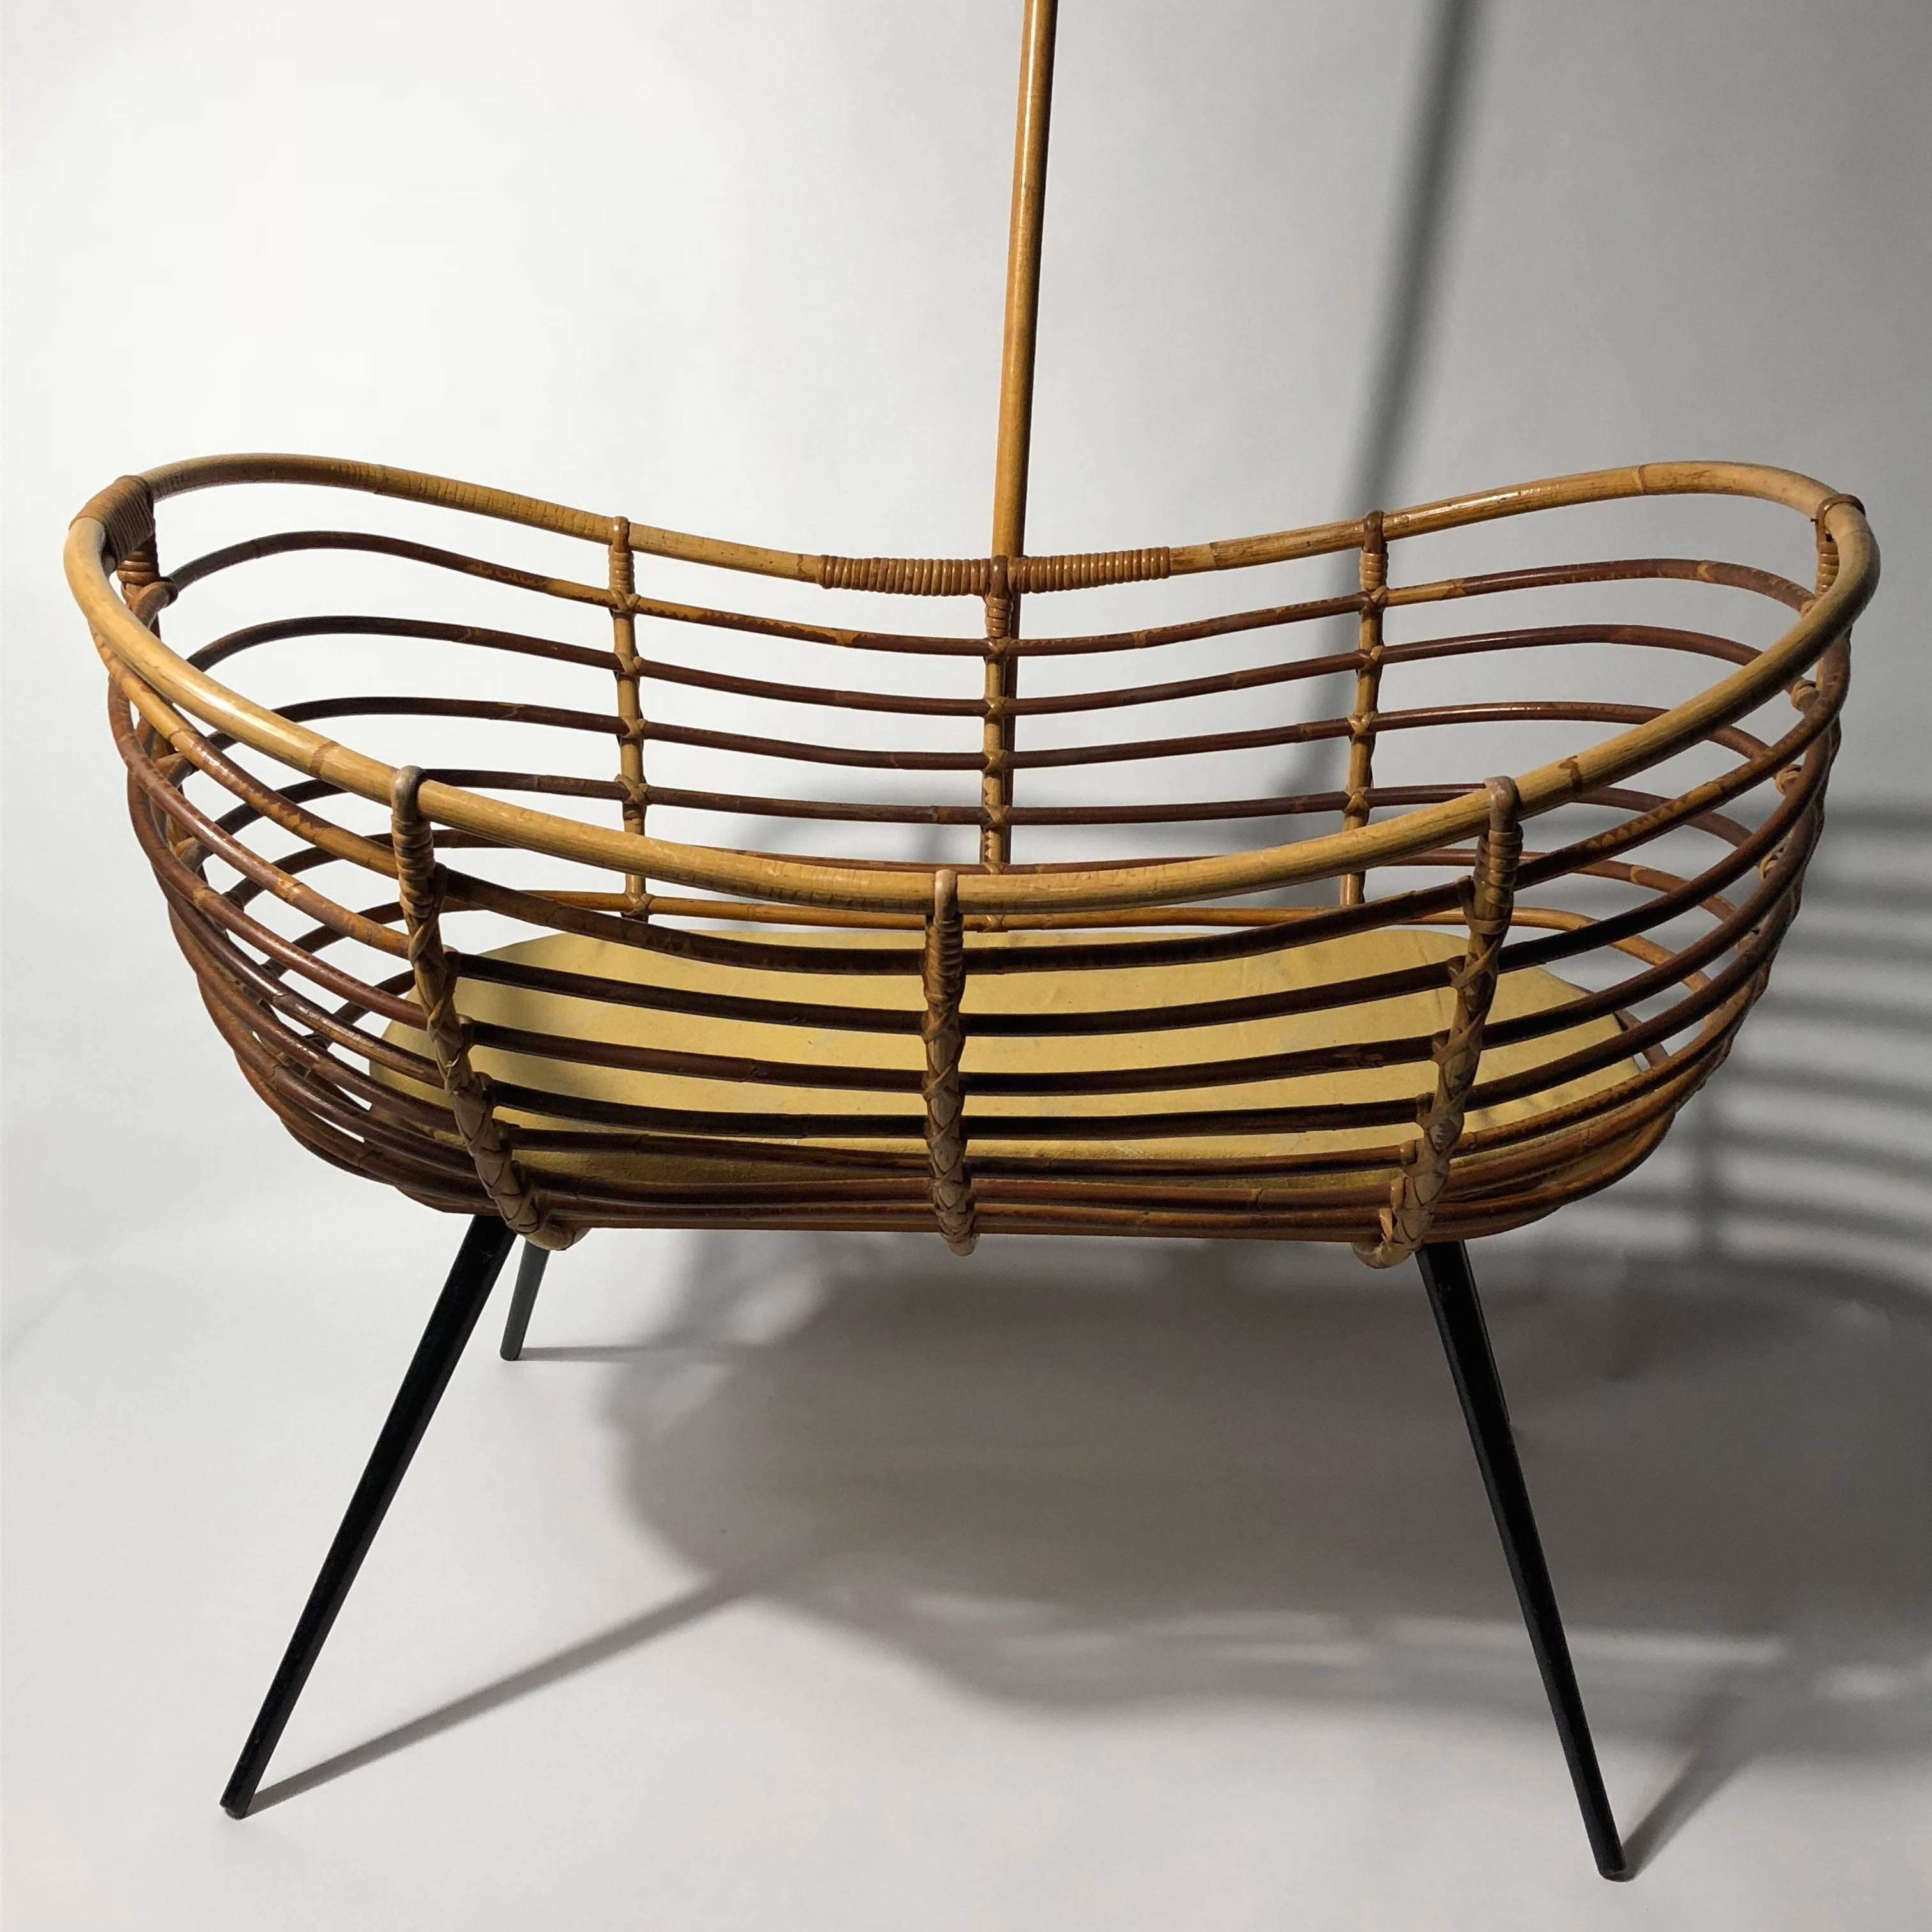 Dutch Rattan Bassinet Crib Cradle by Dirk van Sliedrecht, Rohé Noordwolde, 1950s